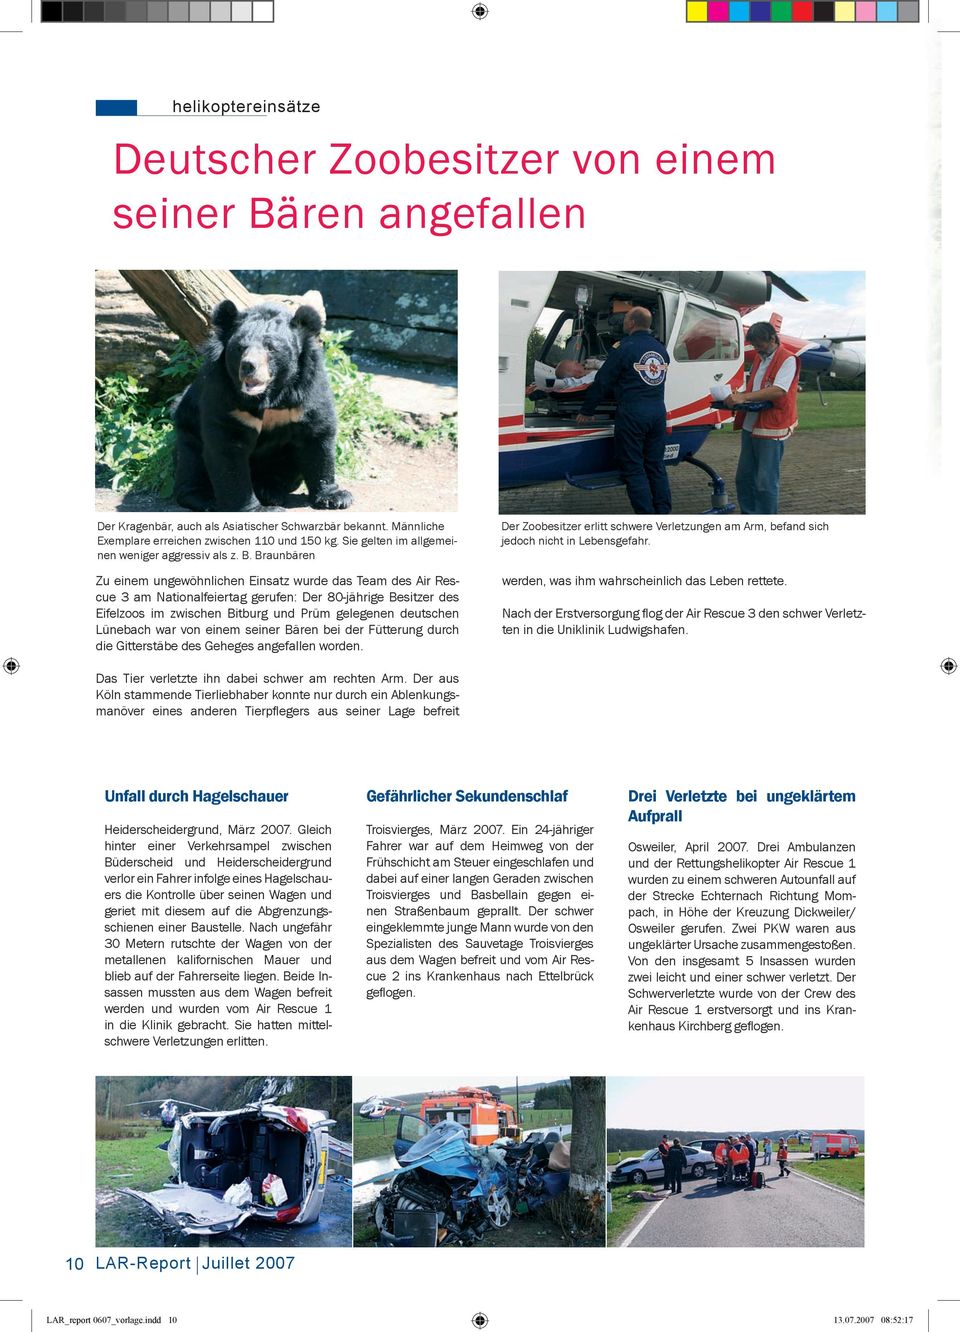 Braunbären Zu einem ungewöhnlichen Einsatz wurde das Team des Air Rescue 3 am Nationalfeiertag gerufen: Der 80-jährige Besitzer des Eifelzoos im zwischen Bitburg und Prüm gelegenen deutschen Lünebach